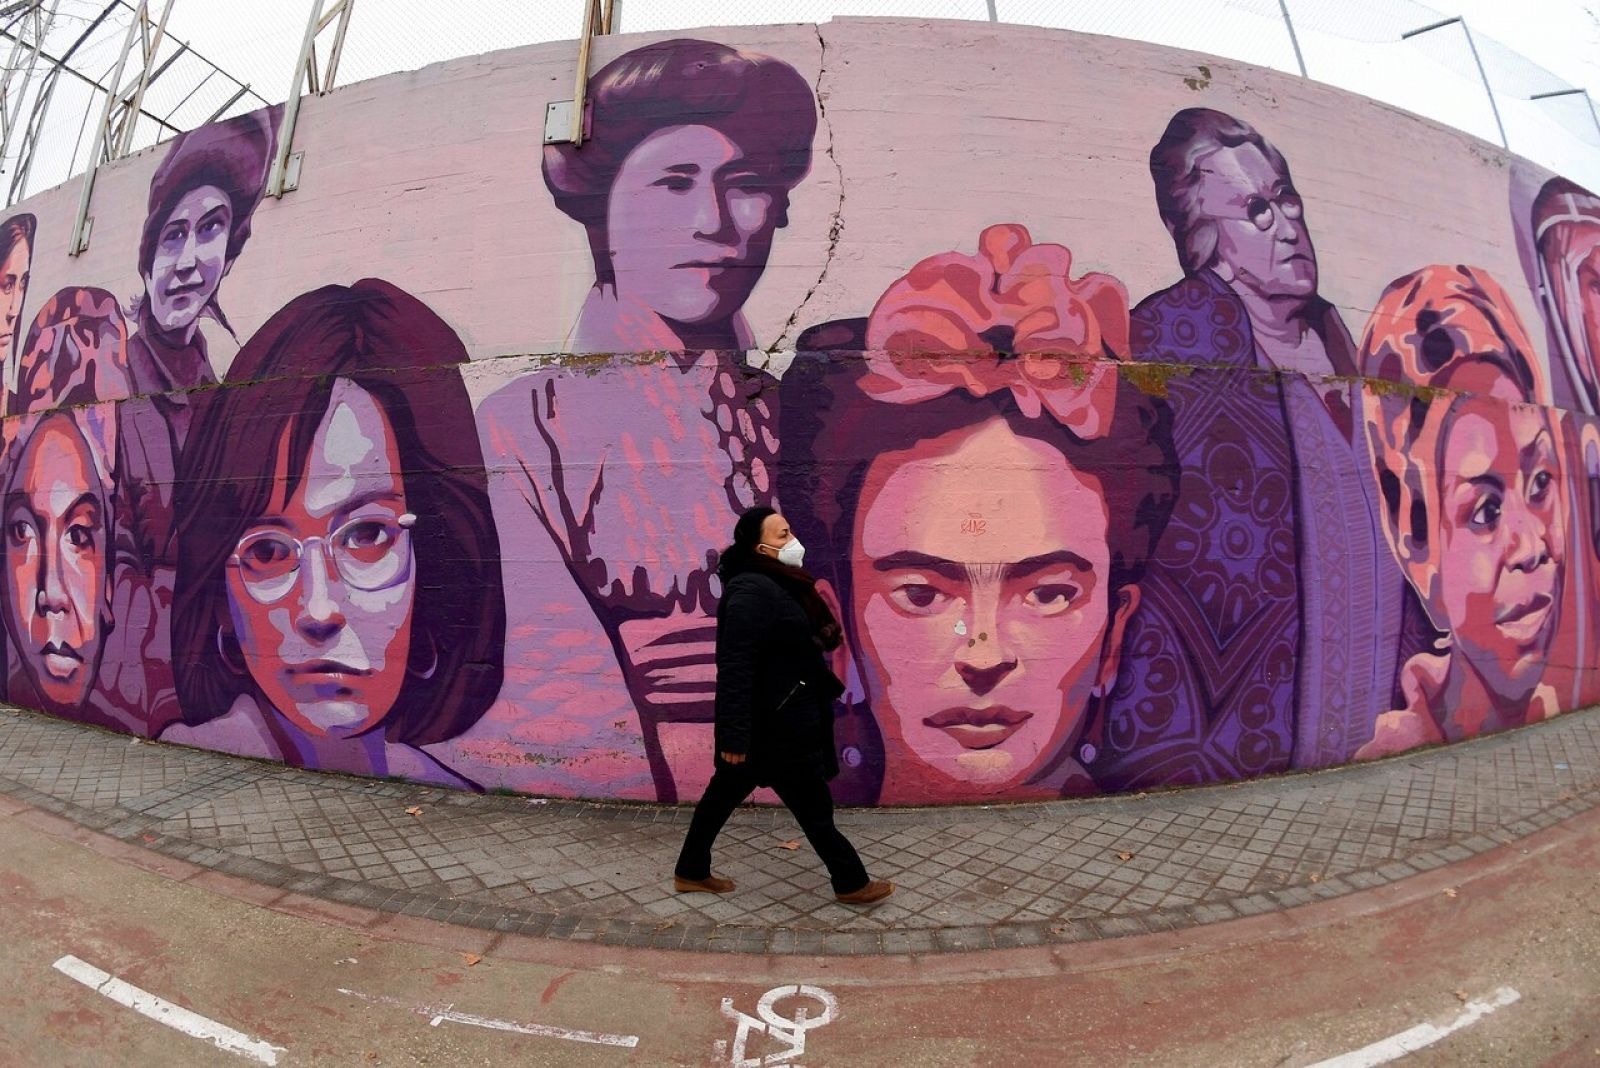 Autor del mural: Autor del mural feminista de Madrid: "No entiendo que se mire a esas mujeres bajo el prisma político"